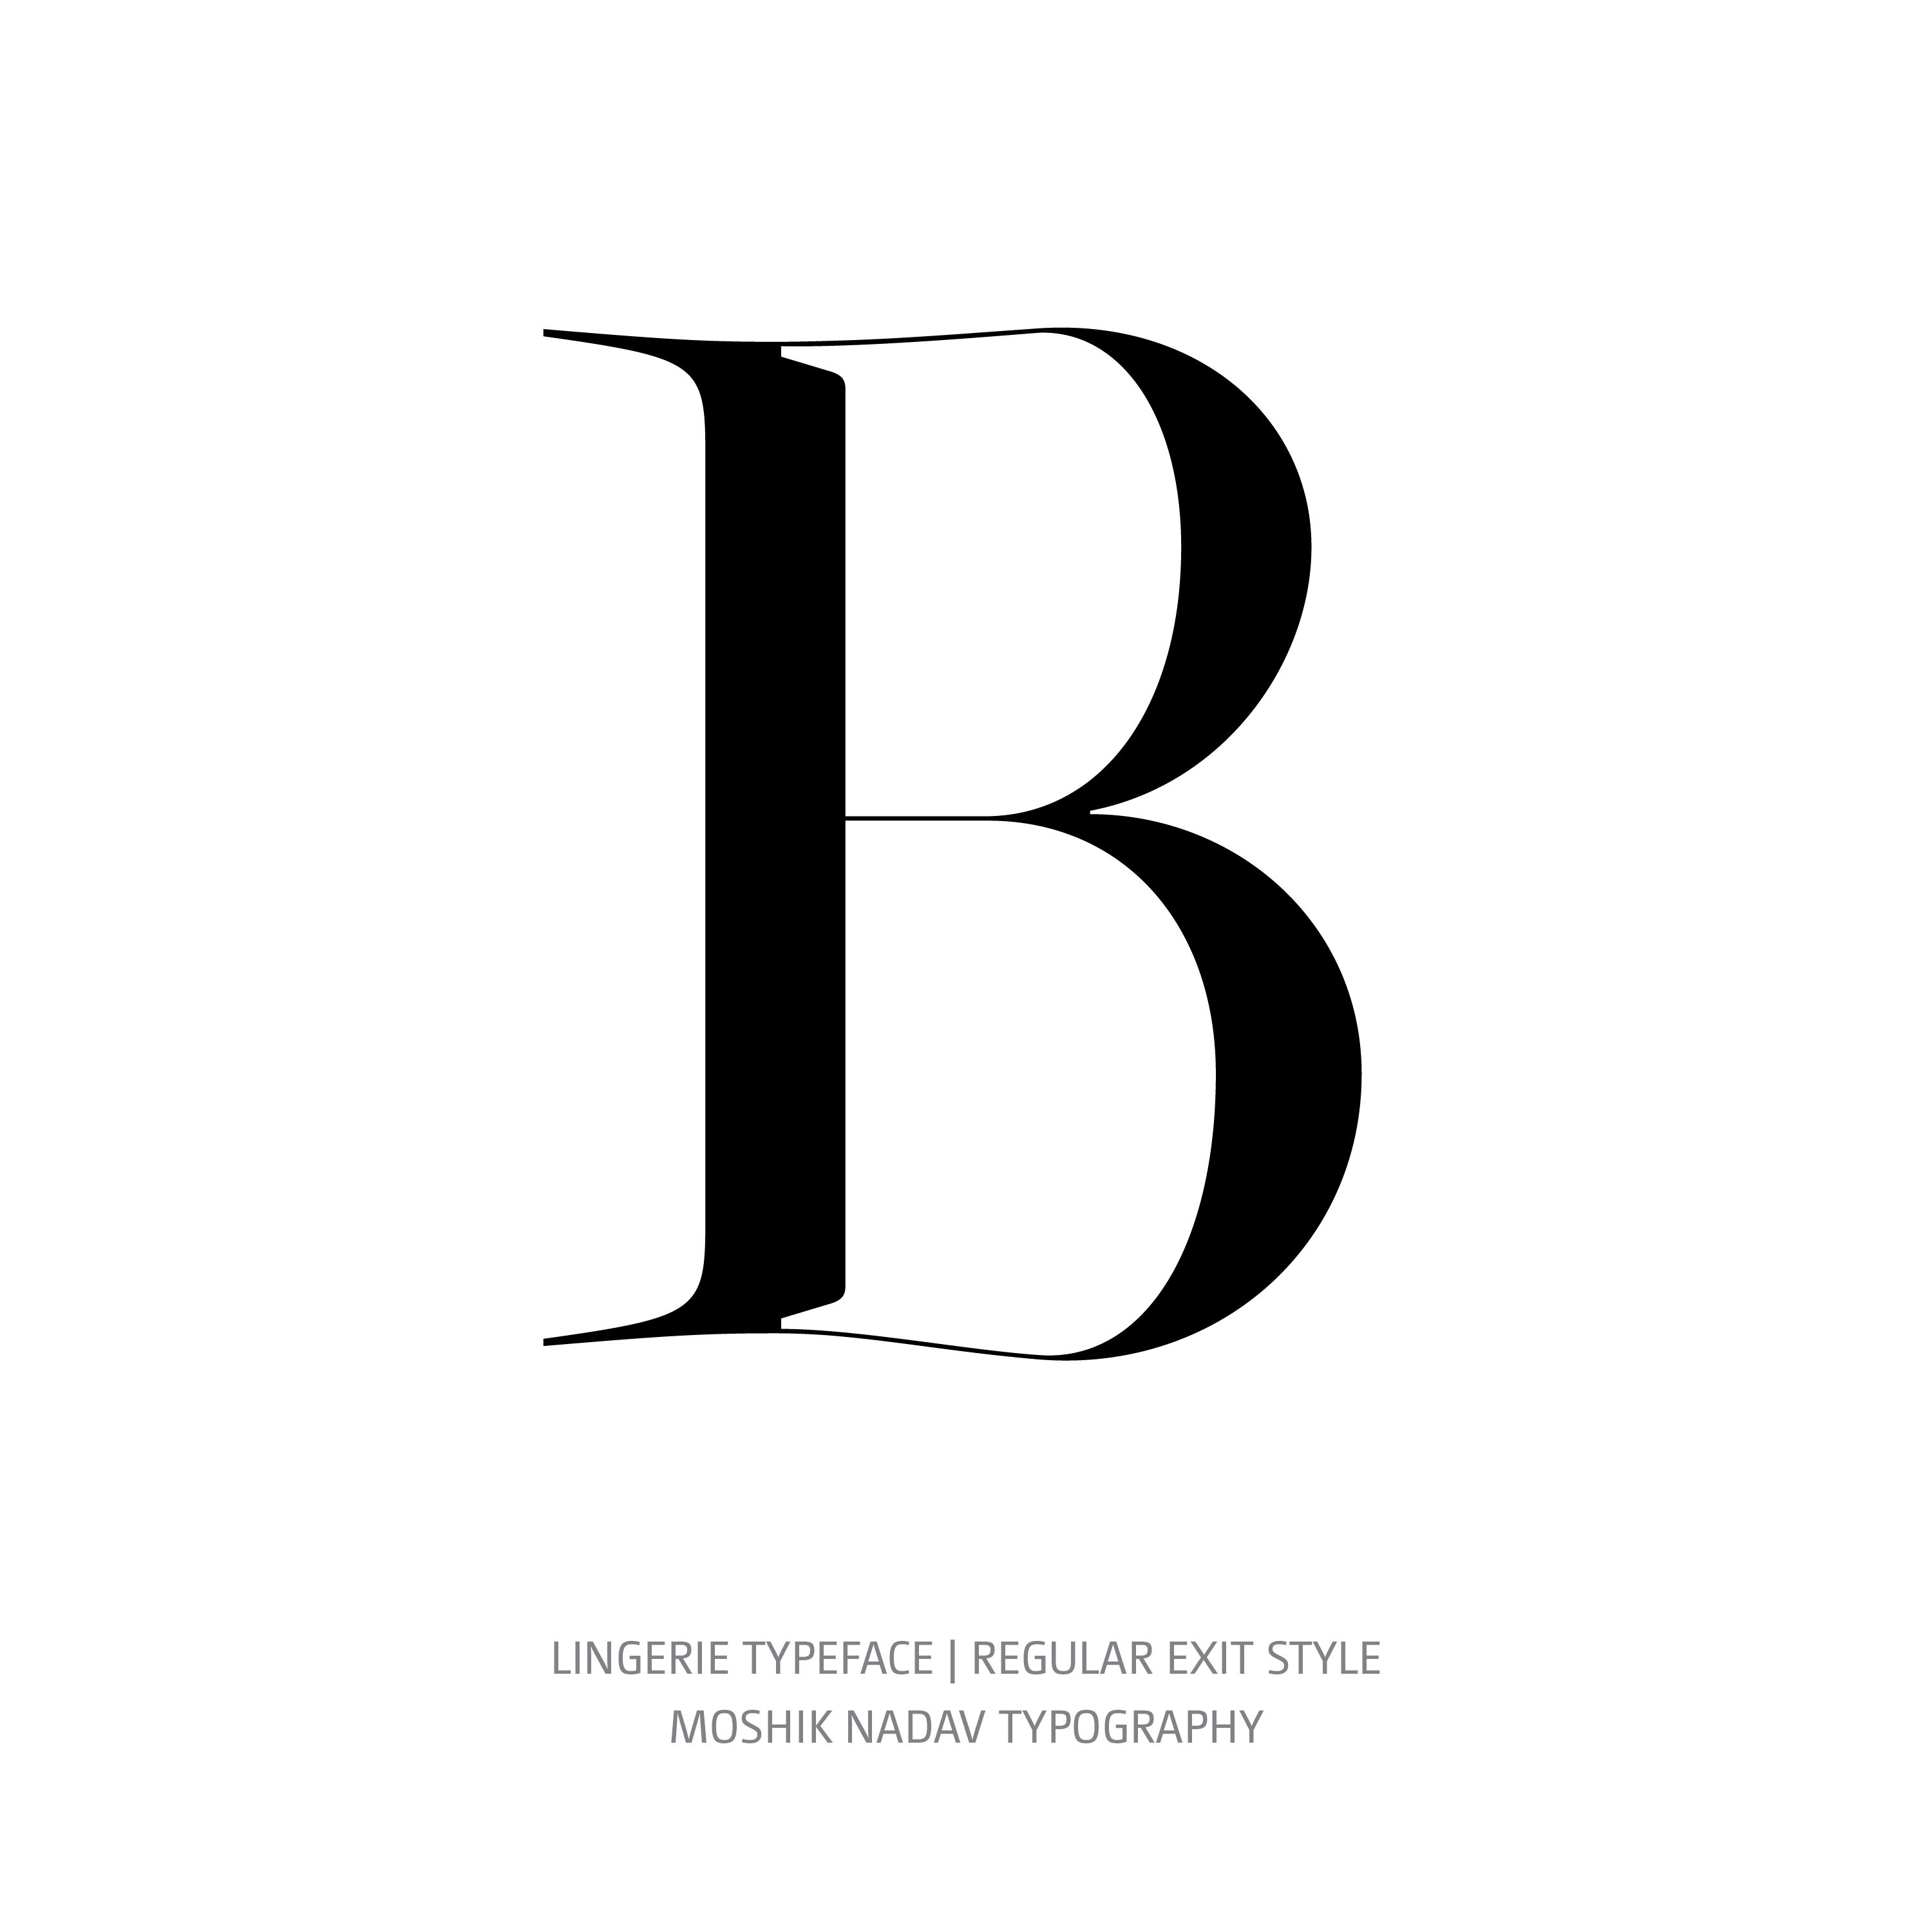 Lingerie Typeface Regular Plain B